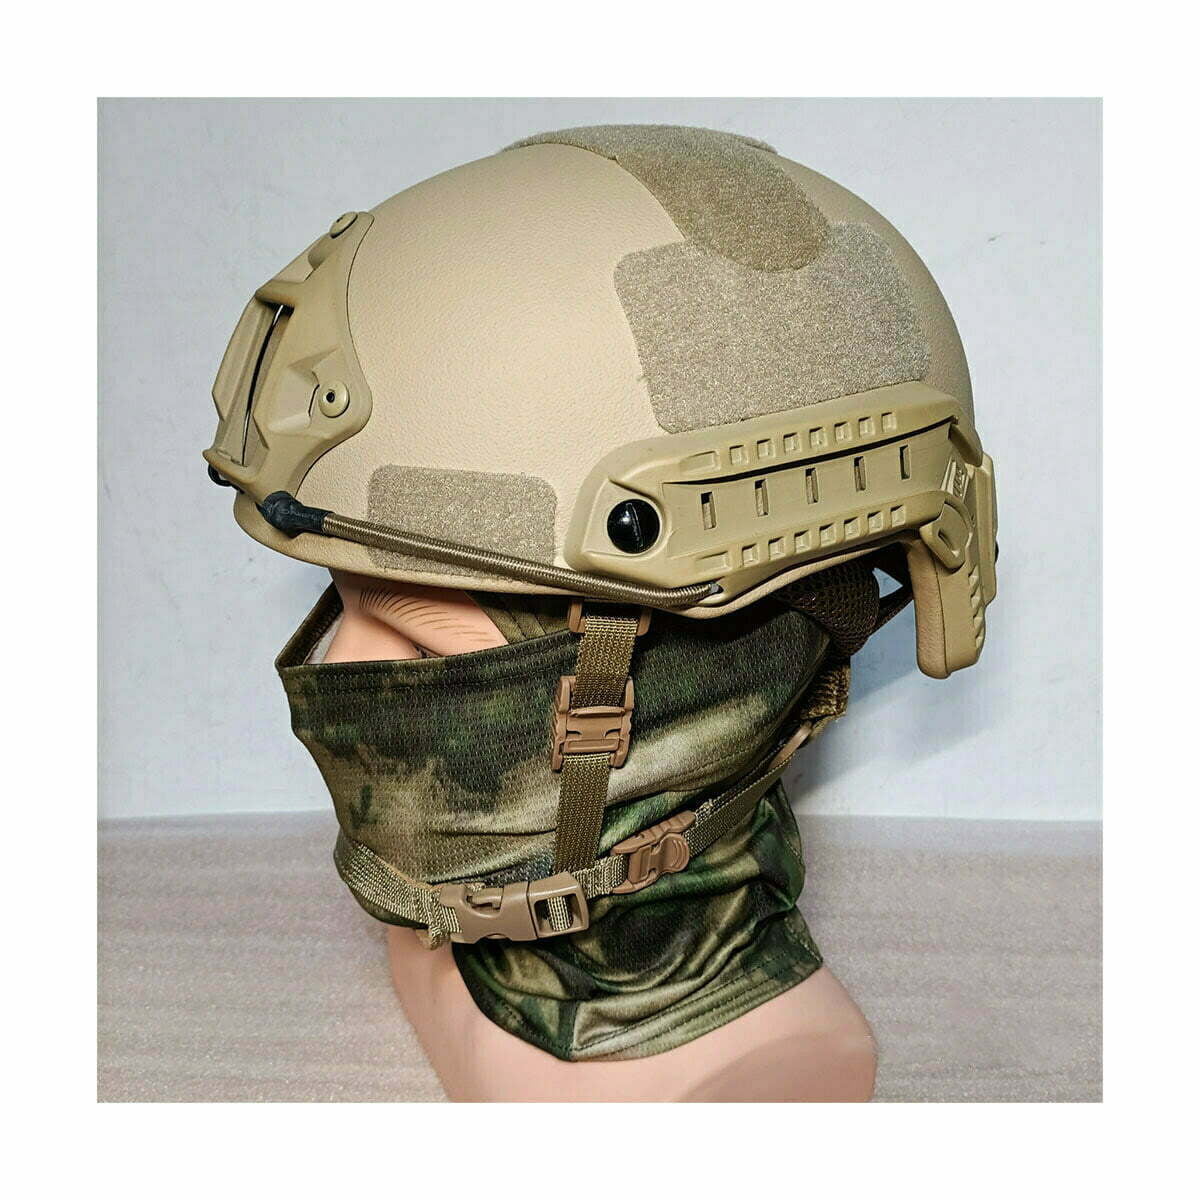 Casco militar polaco, casco táctico de Kevlar clase IIIA, casco energético  con máscara rápida, negro – Kask wojskowy balistyczny, hełm taktyczny  kevlar